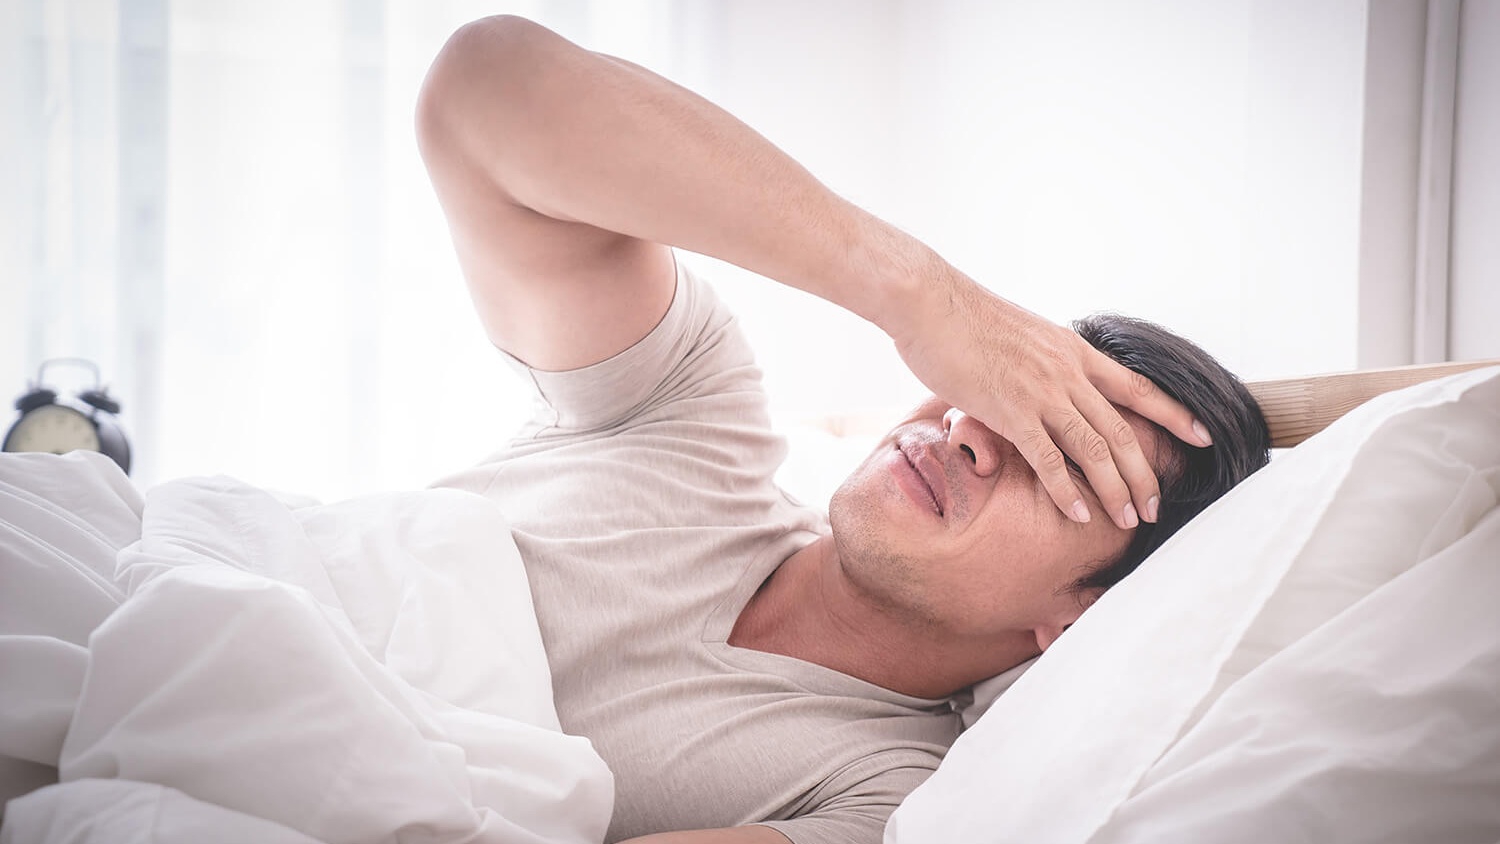 Nguyên nhân và cách xử lý khi ngủ trưa dậy bị đau đầu buồn nôn 